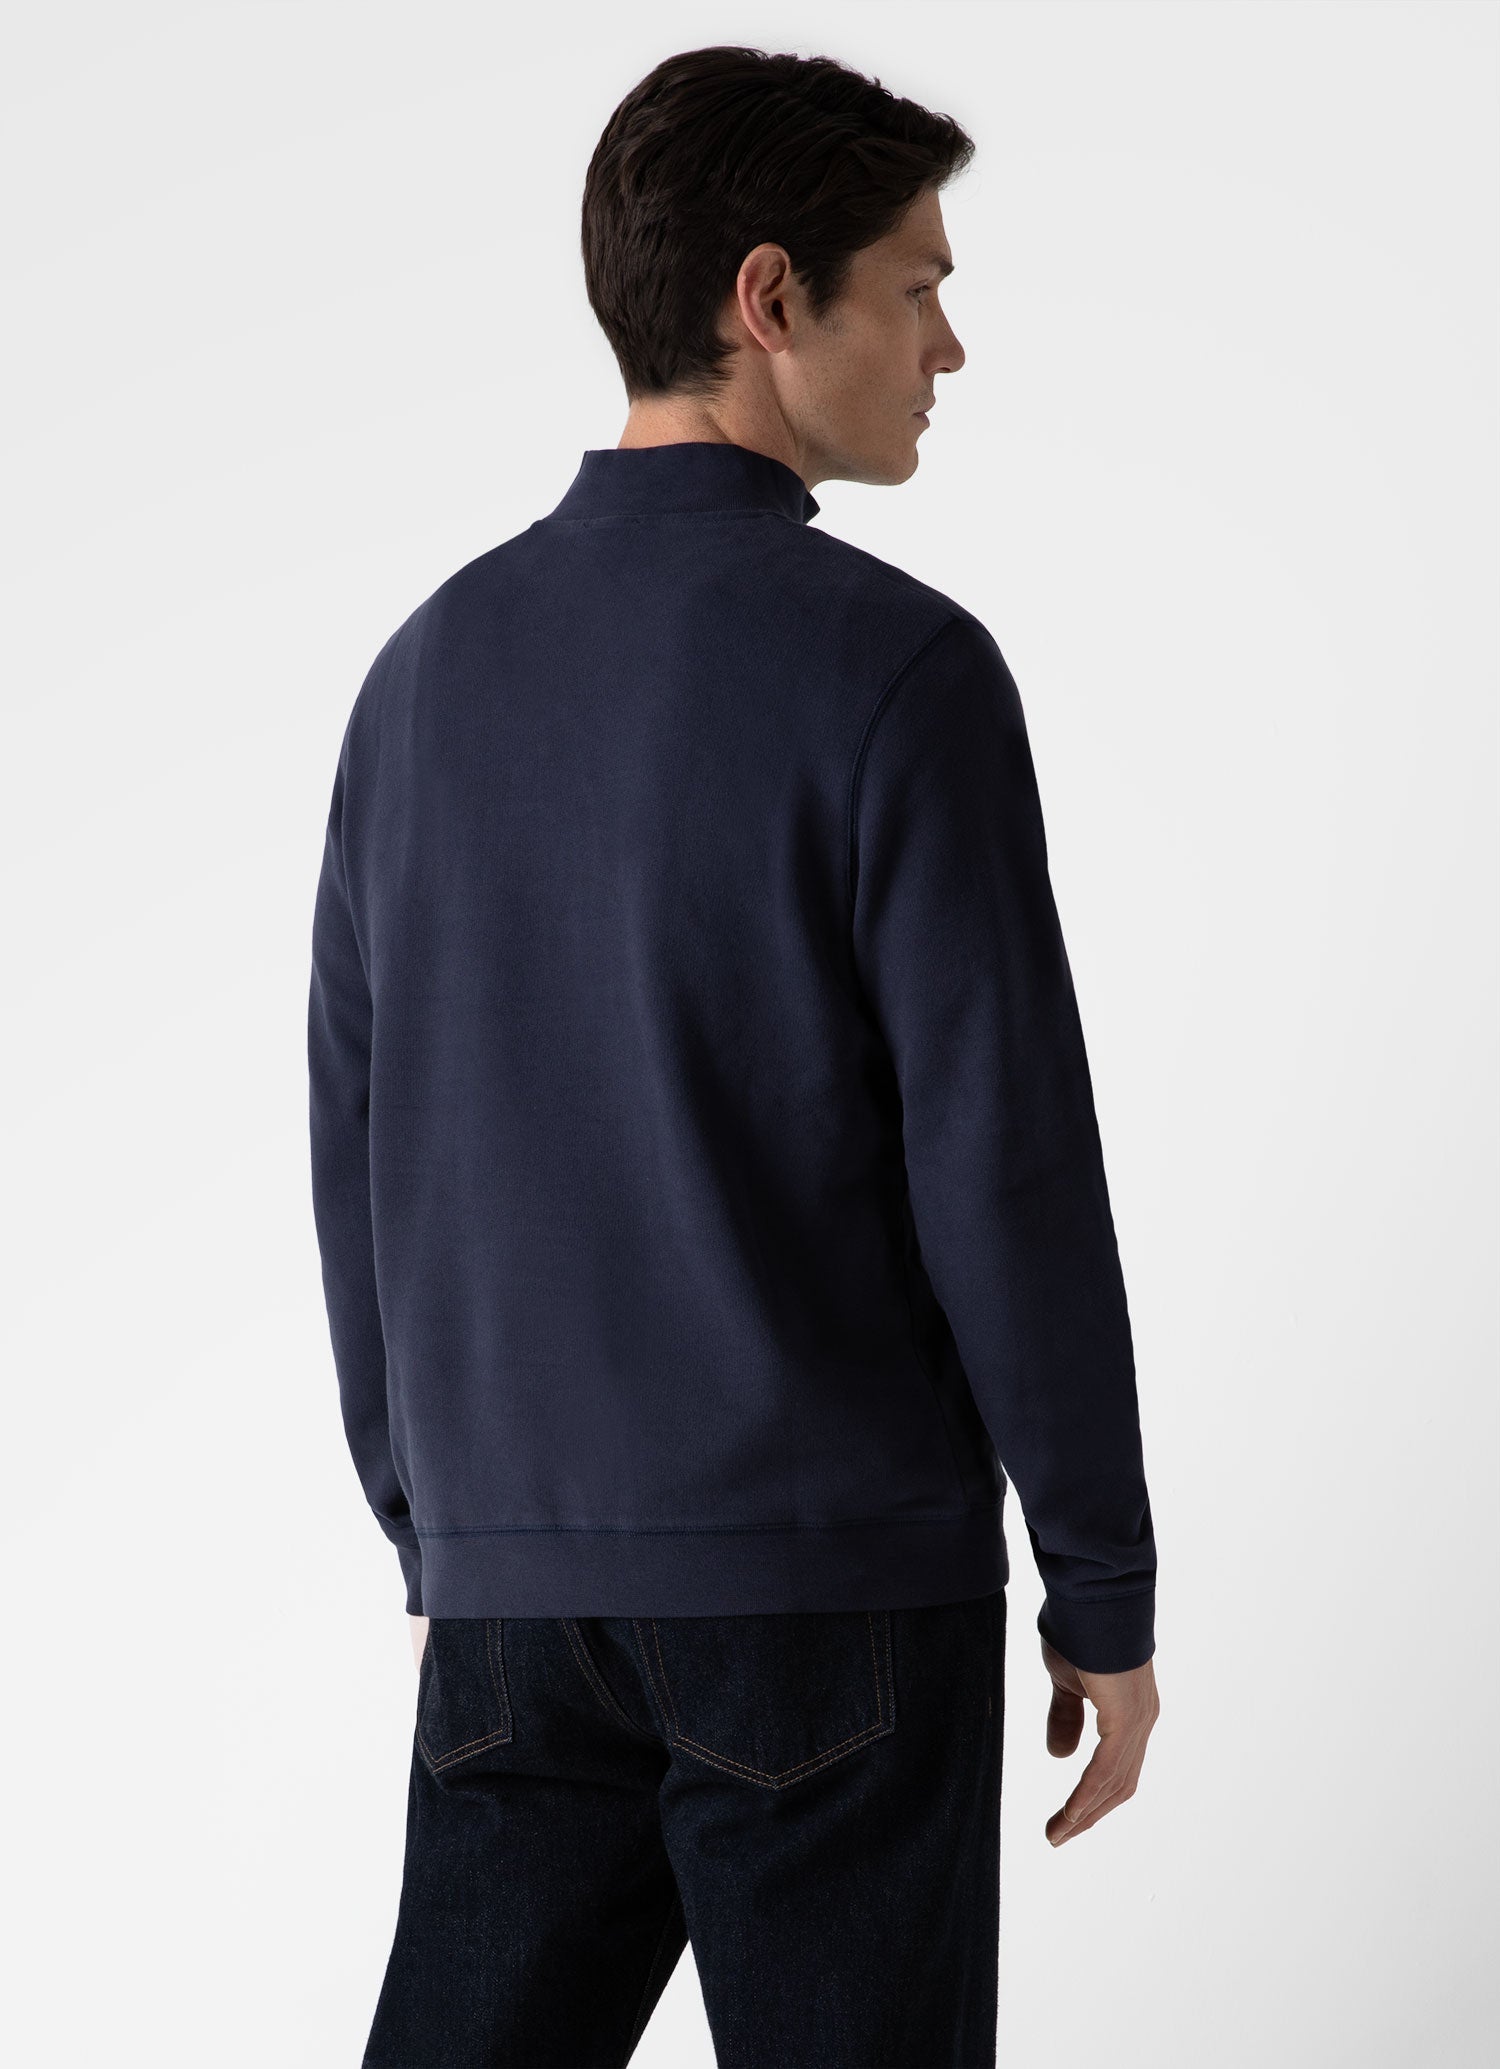 Men's Half Zip Loopback Sweatshirt in Navy